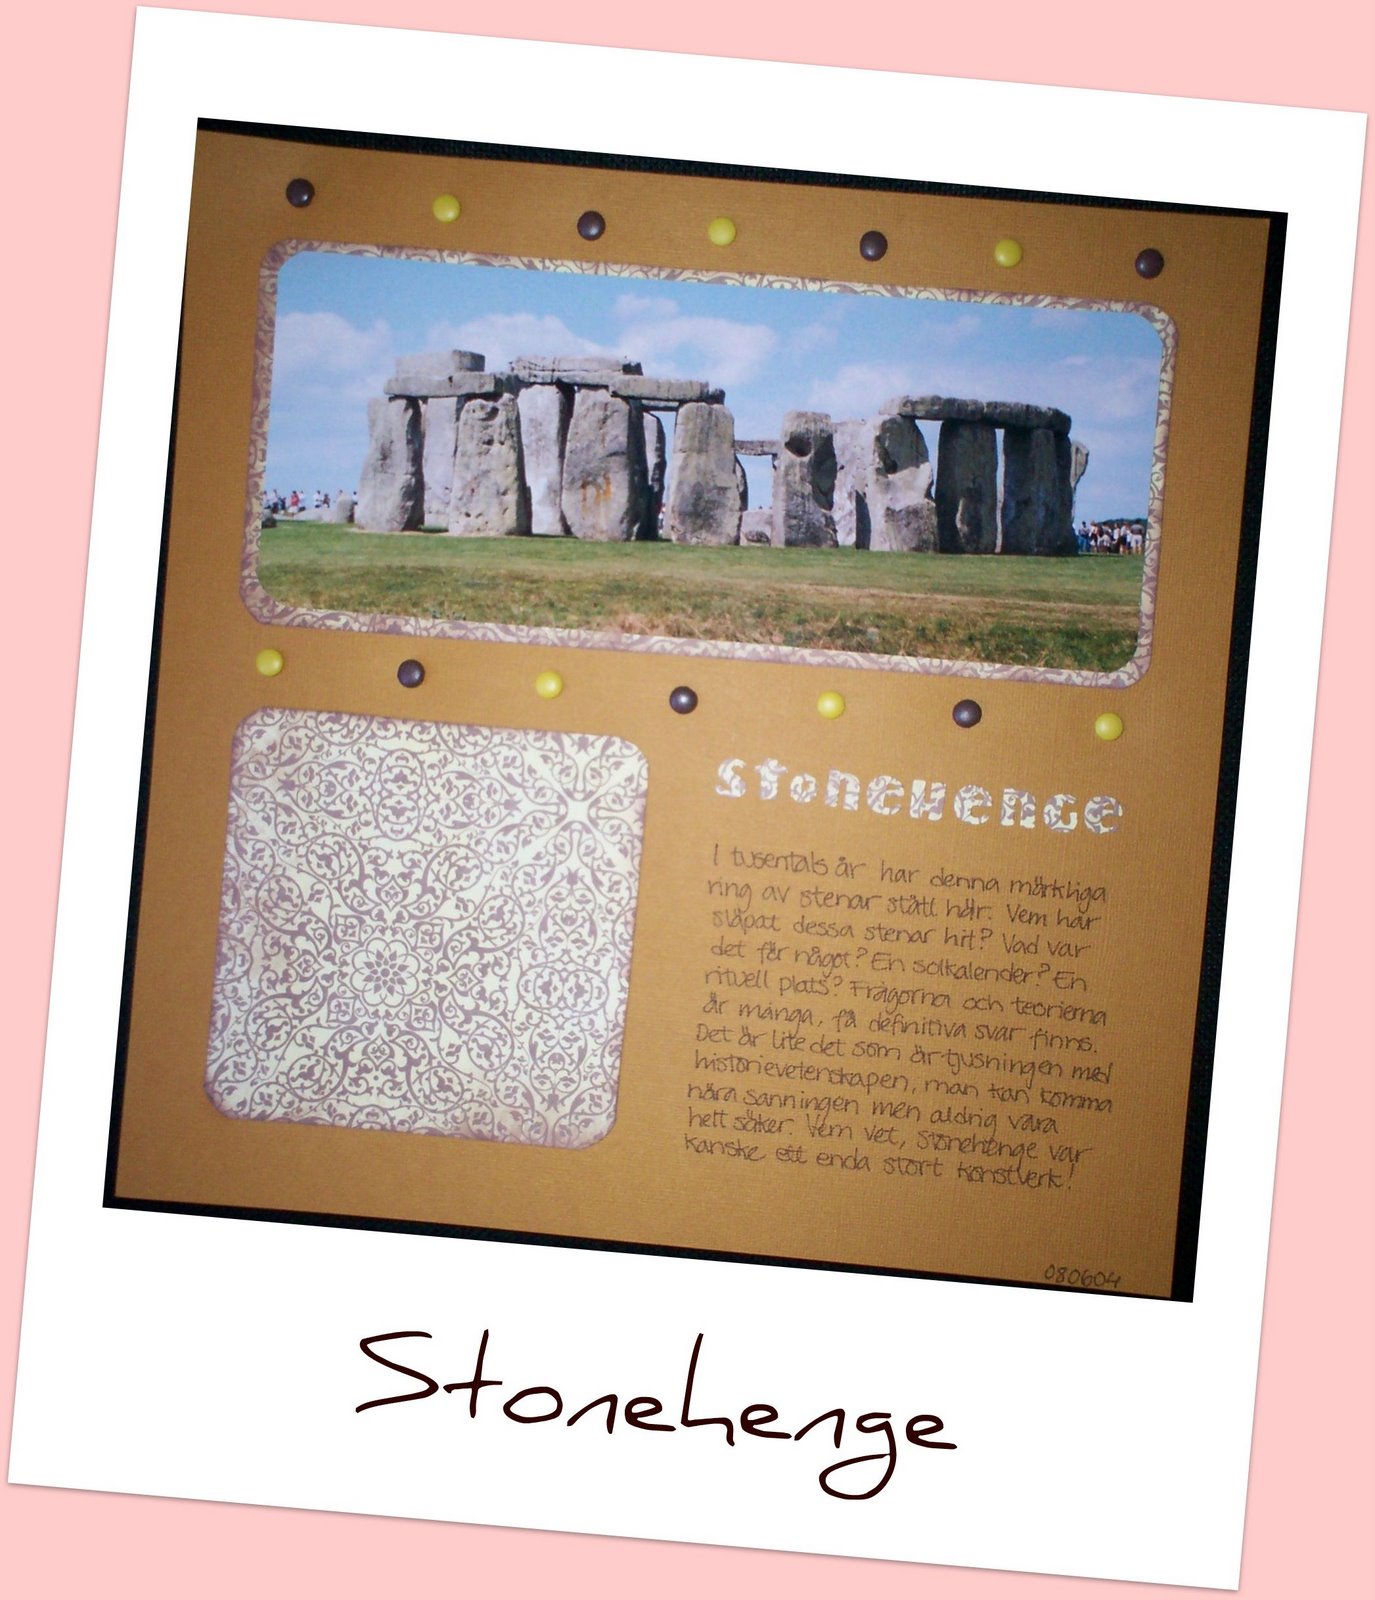 [stonehenge2.jpg]